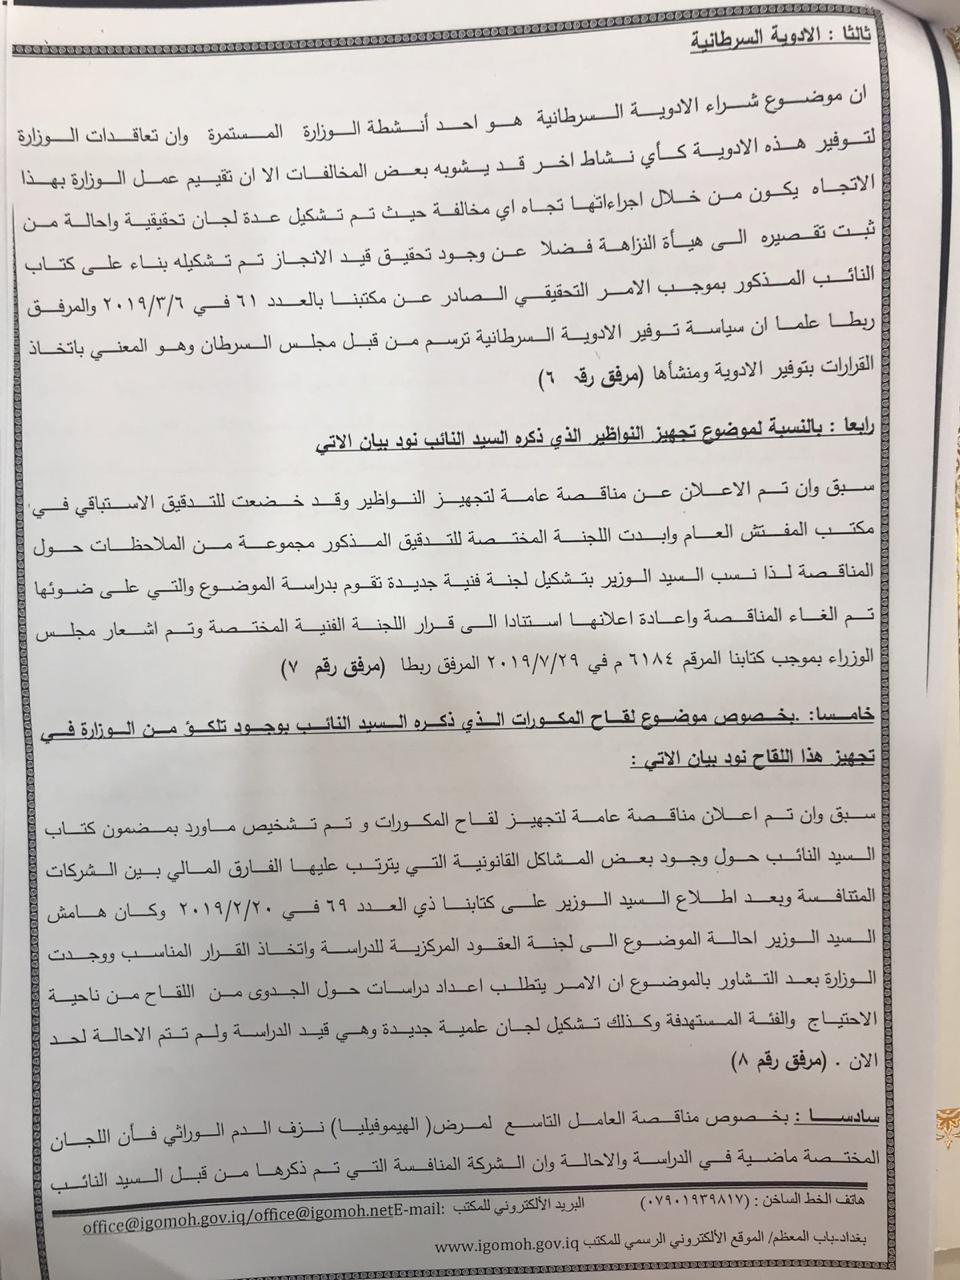  نص رد مفتش وزارة الصحة على تصريحات النائب جواد الموسوي